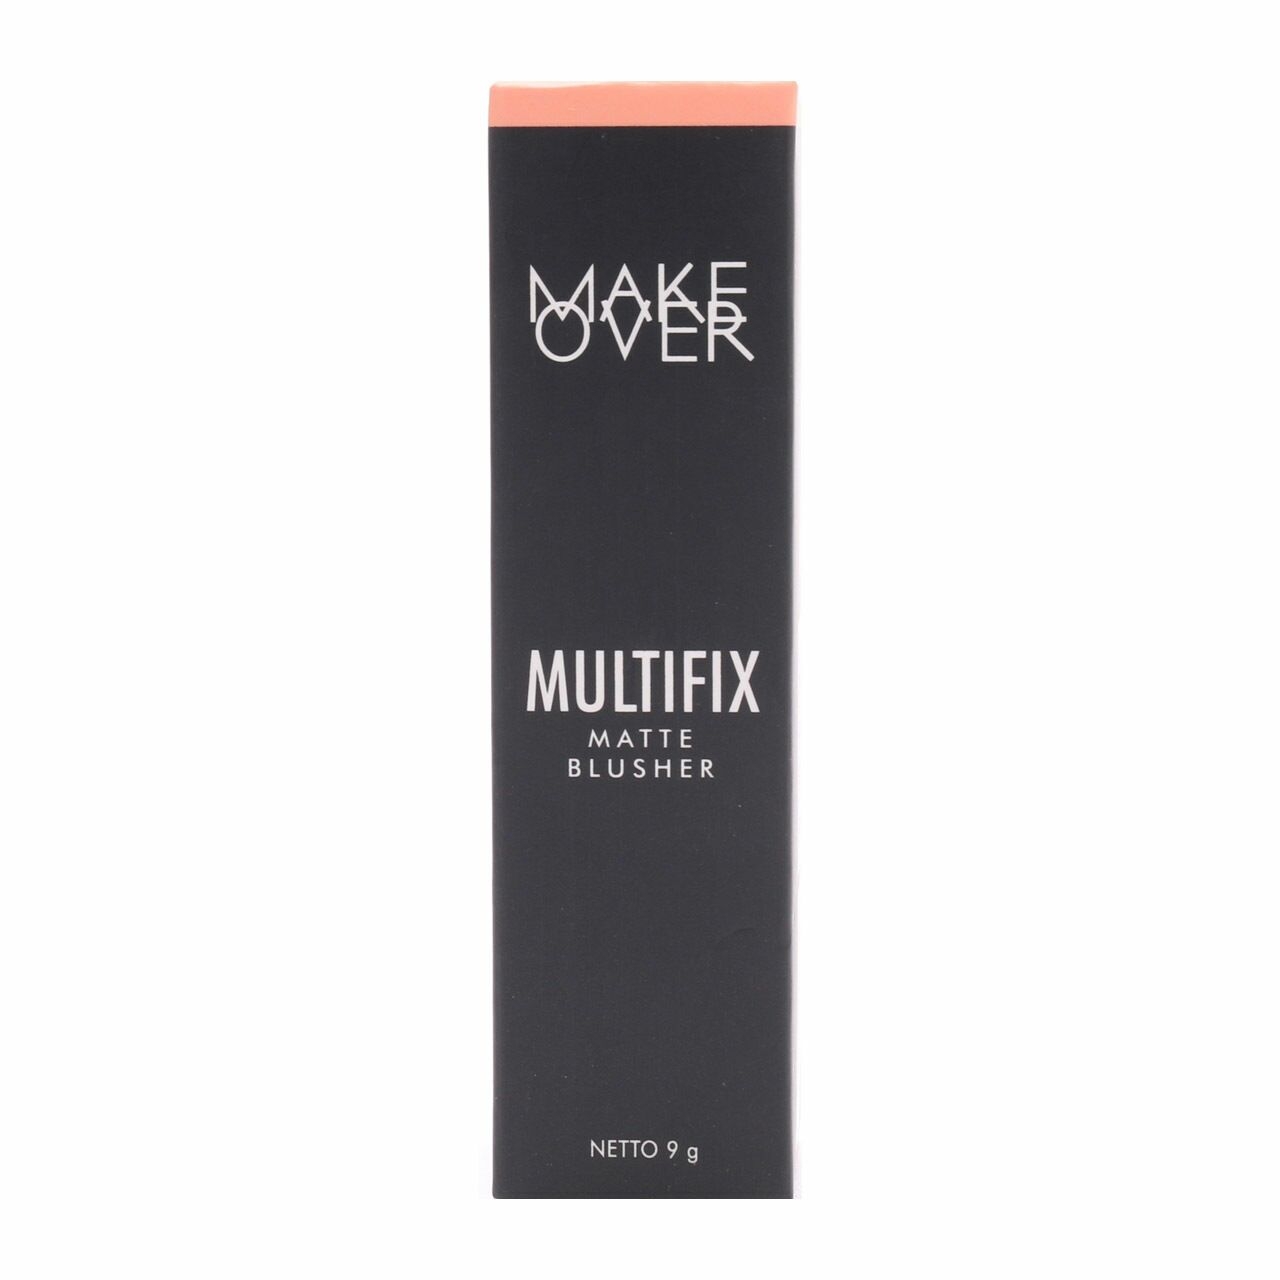 Make Over Multifix Matte Blusher - 04 Peach Blush Faces